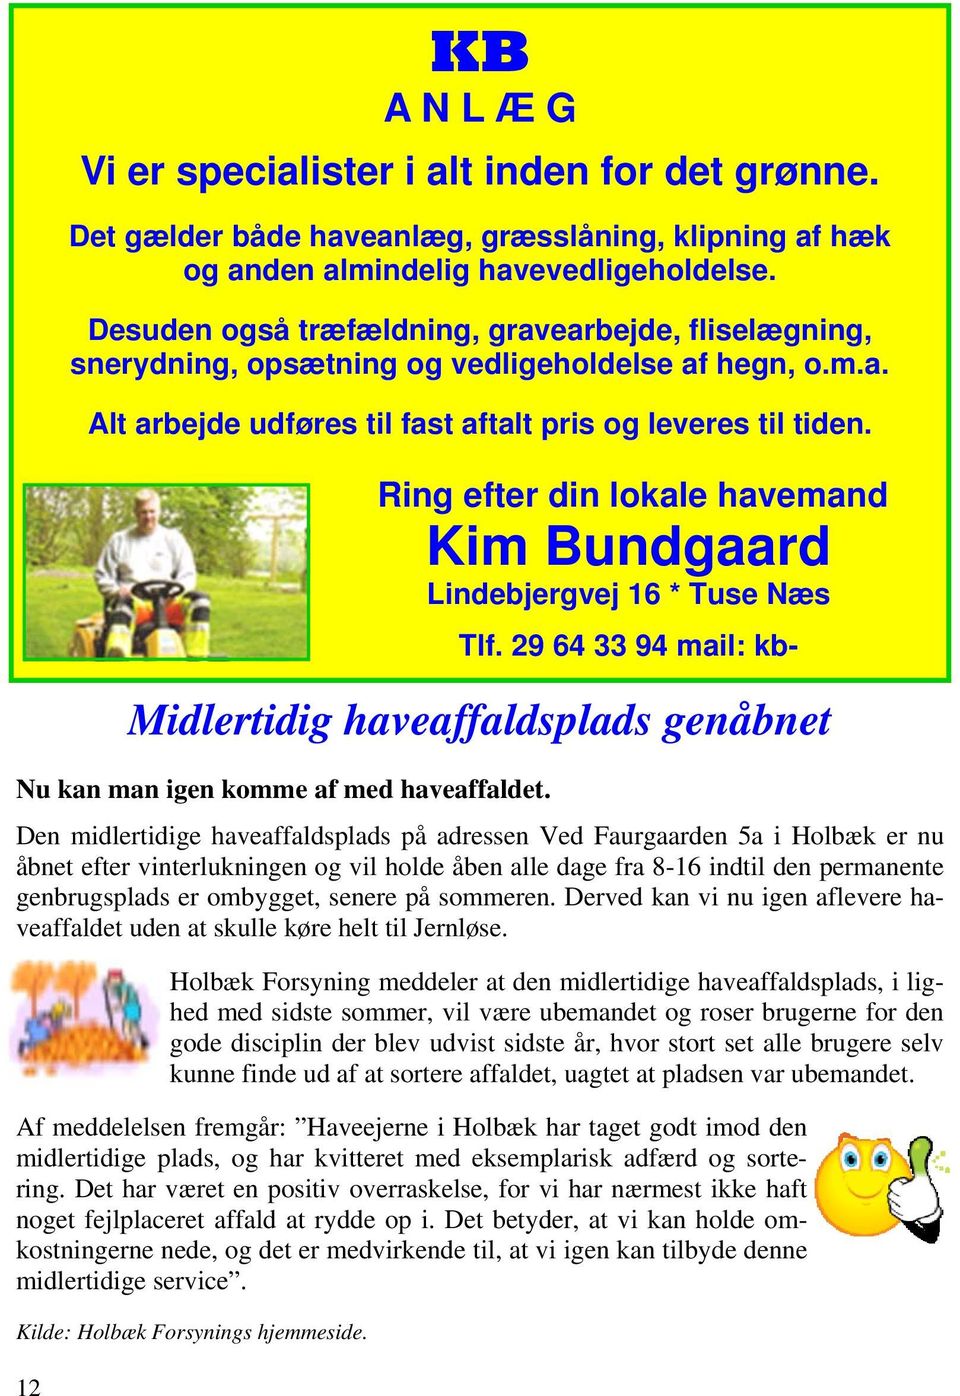 Ring efter din lokale havemand Kim Bundgaard Lindebjergvej 16 * Tuse Næs Tlf. 29 64 33 94 mail: kb- Midlertidig haveaffaldsplads genåbnet Nu kan man igen komme af med haveaffaldet.